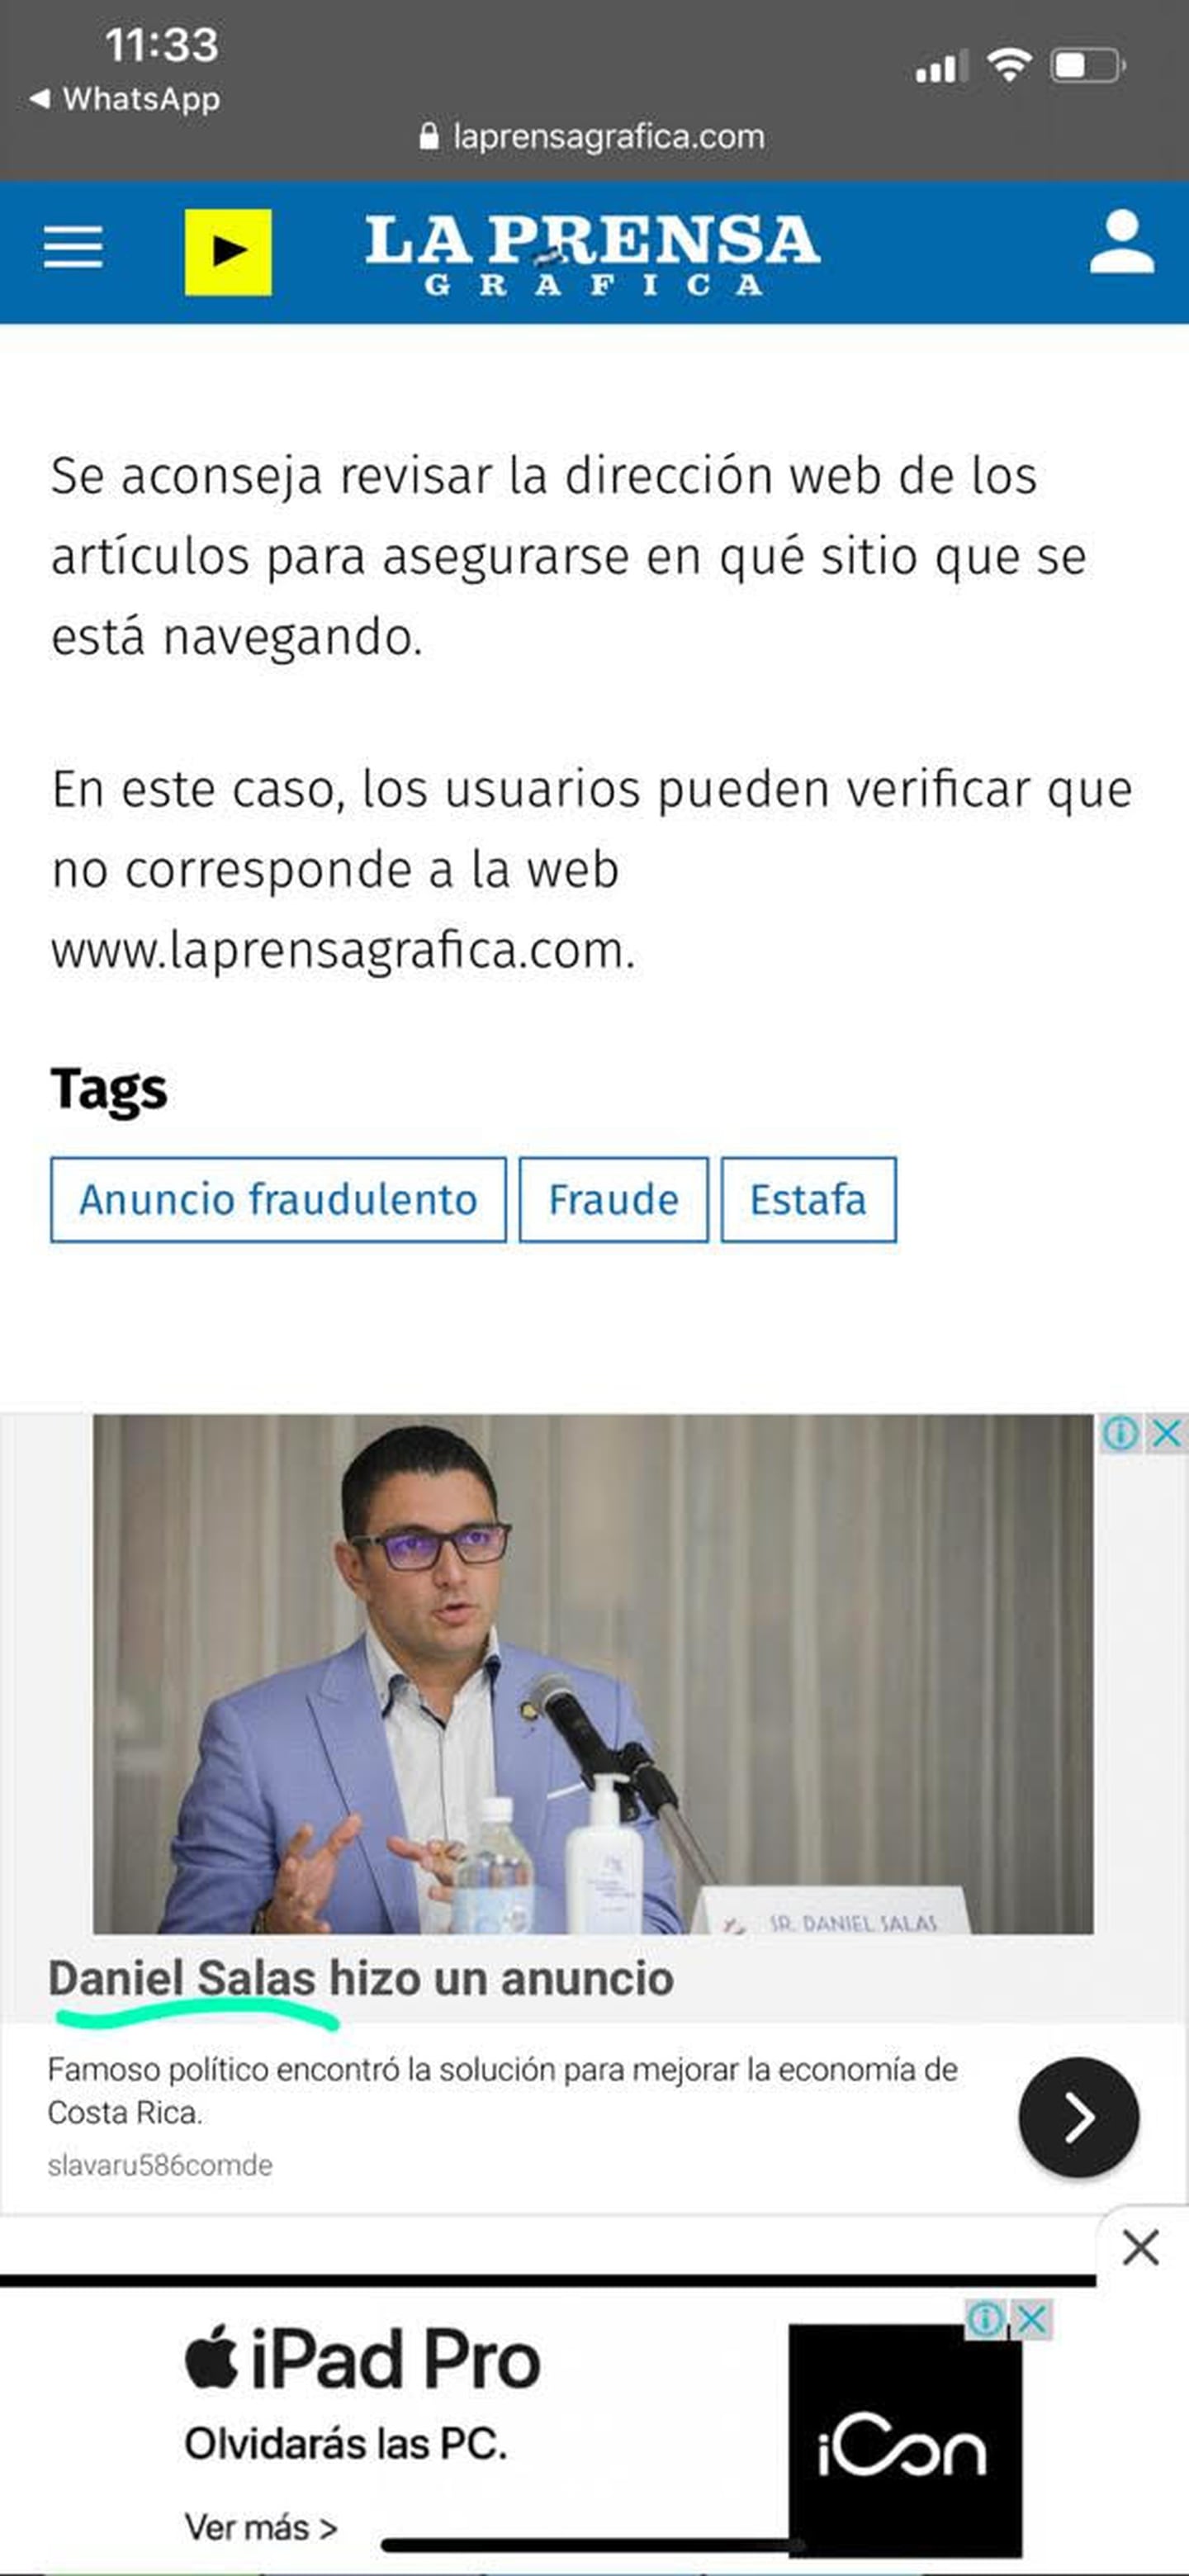 La falsa publicación también fue bloqueada del sitio web del medio La Prensa Gráfica, de El Salvador.